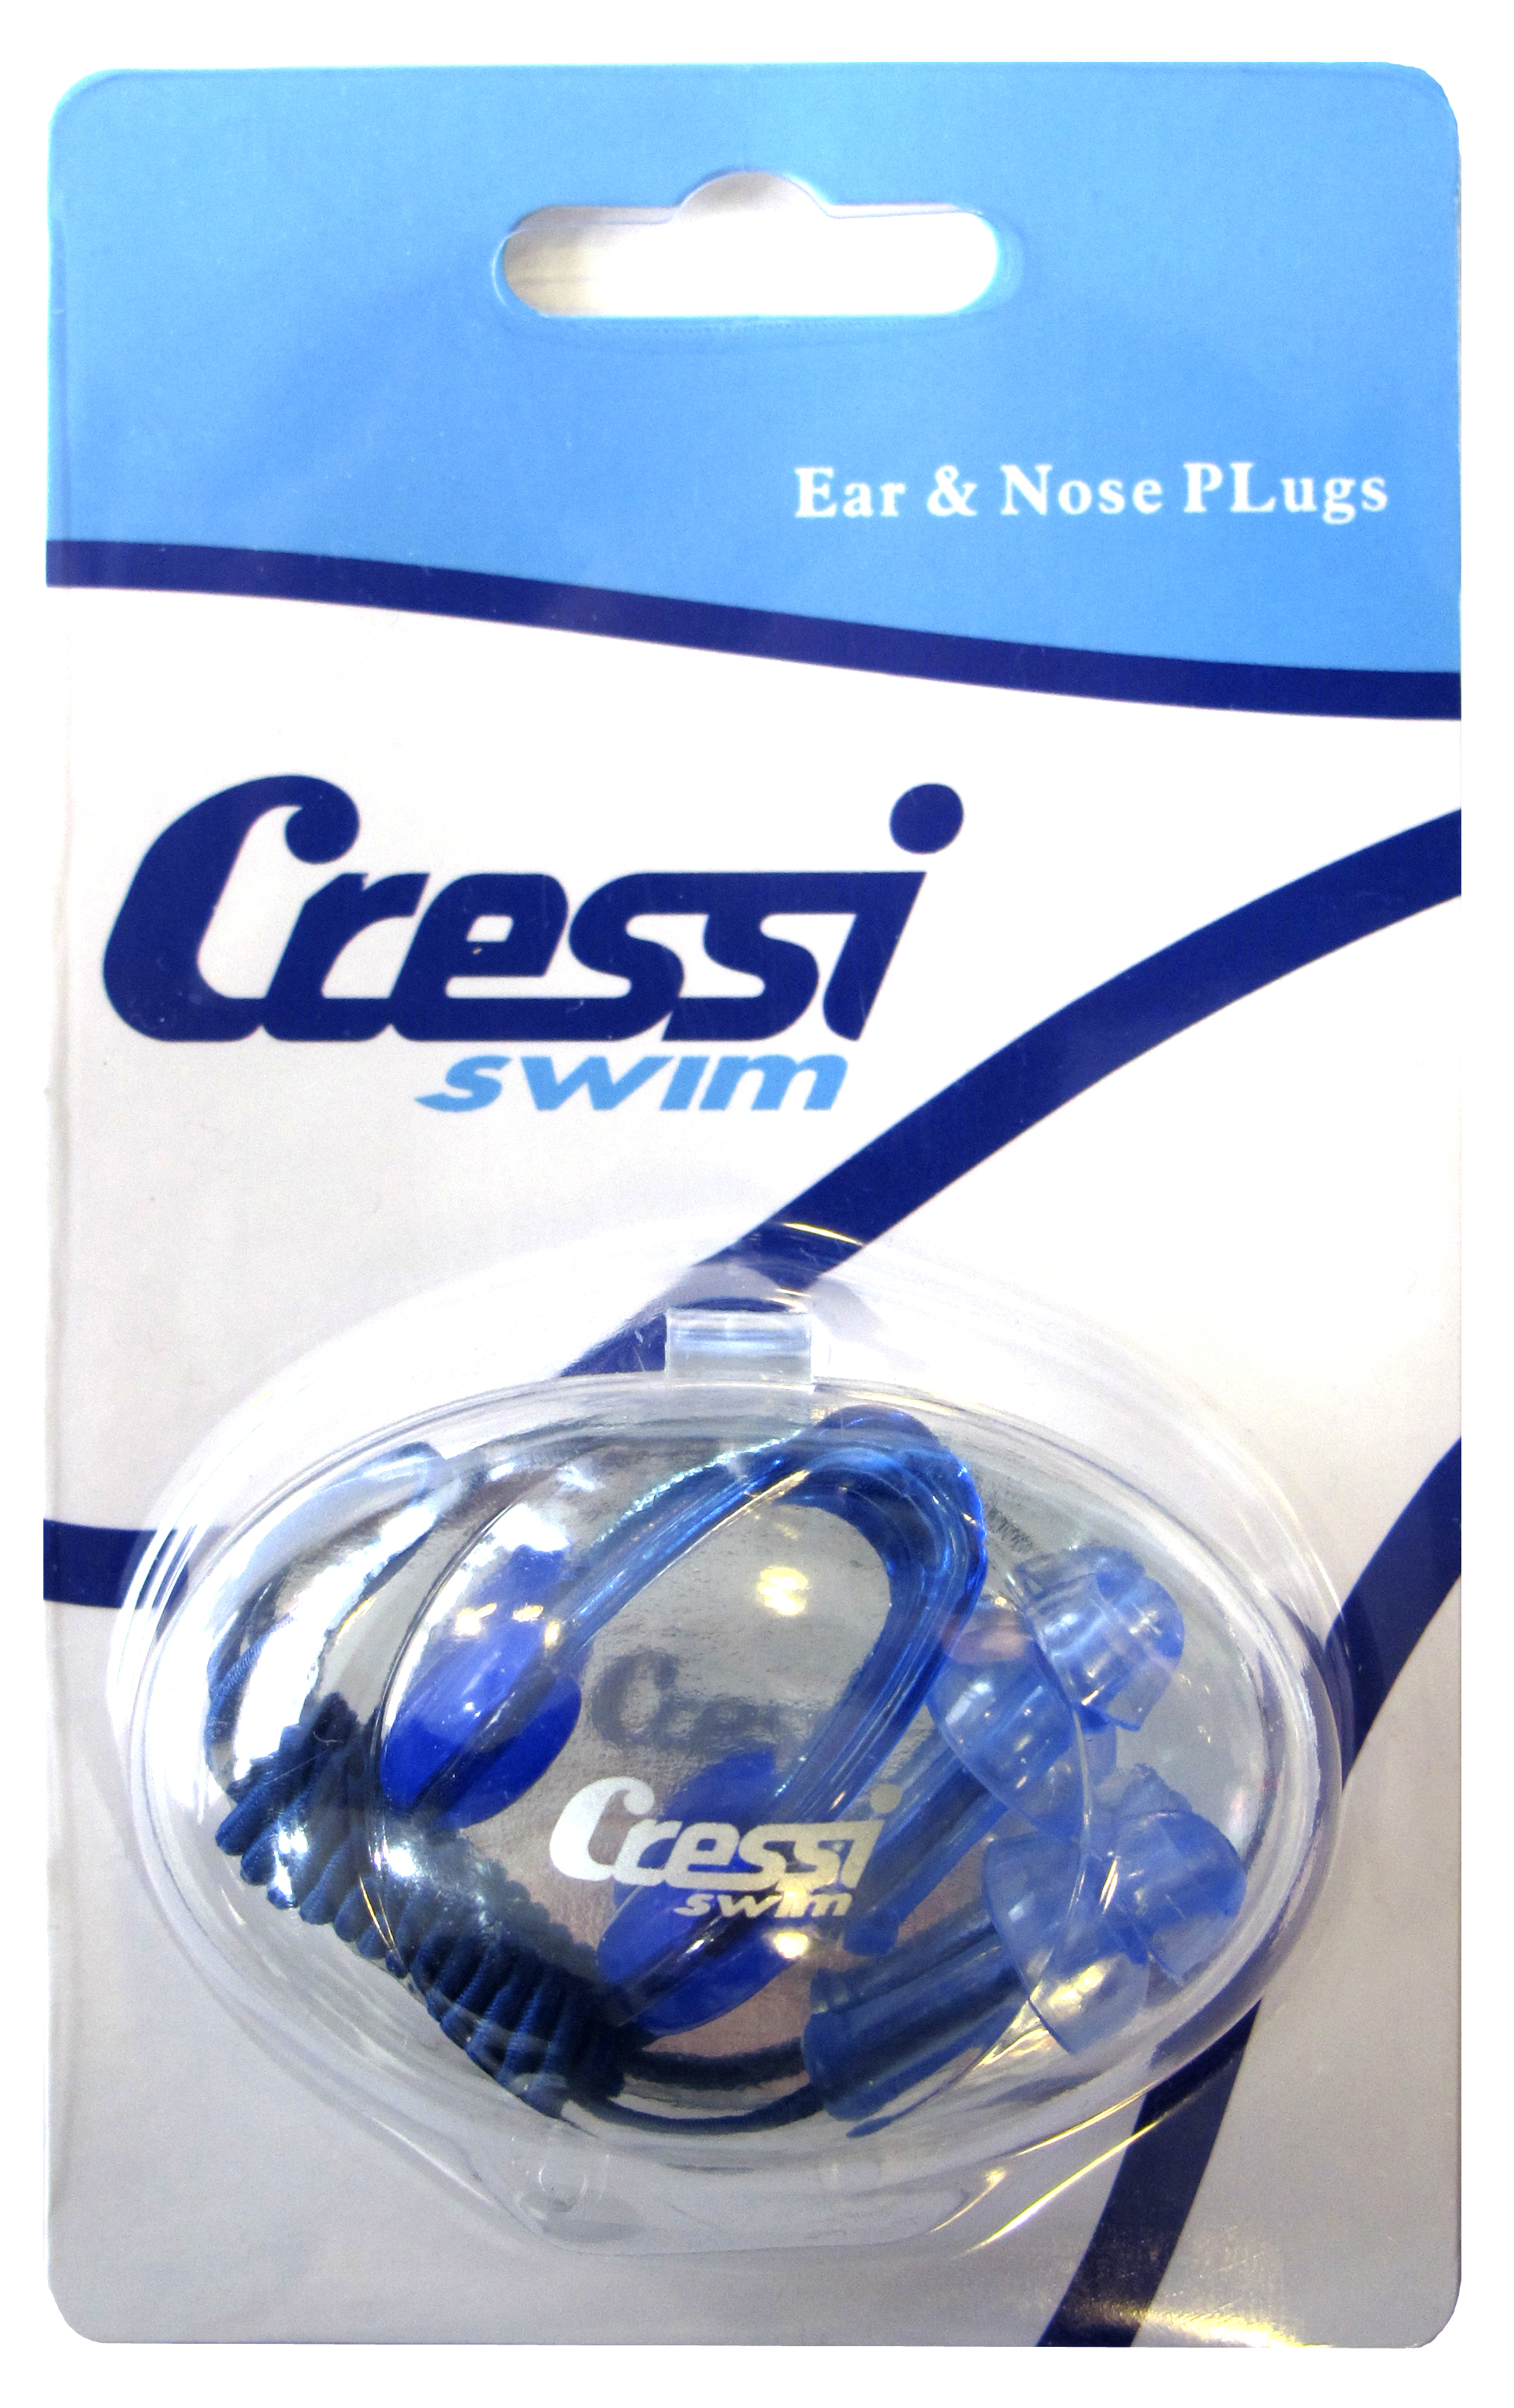 CRESSI Kit de pinza para la nariz y tapones para los oídos - Imagen 1 de 1